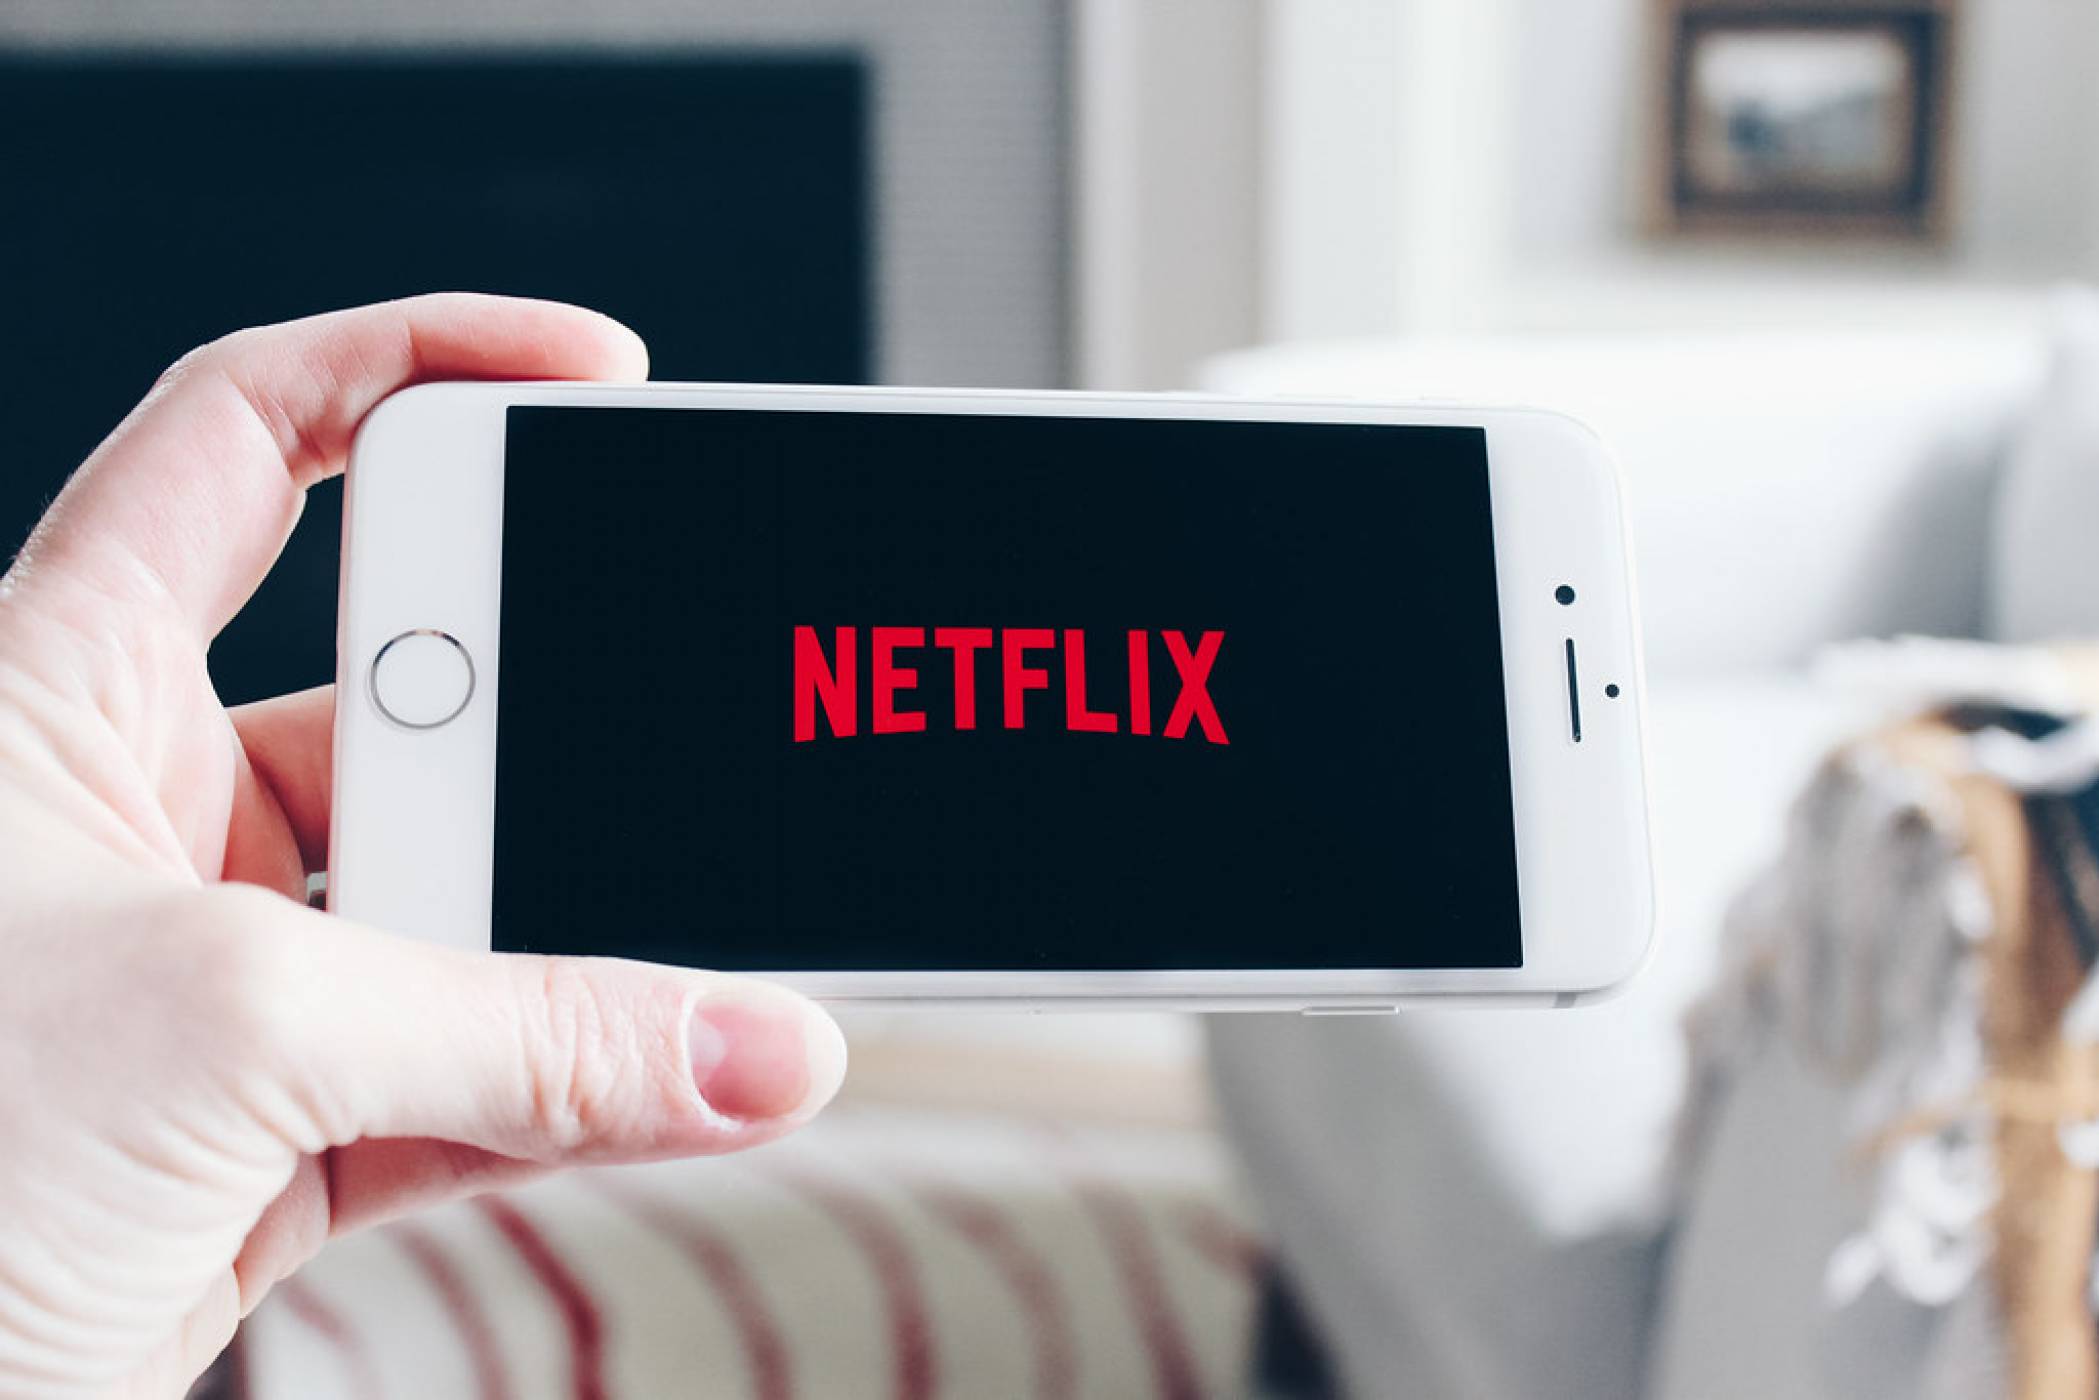 Първият филм на Дейвид Финчер от години насам е оригинална лента за Netflix